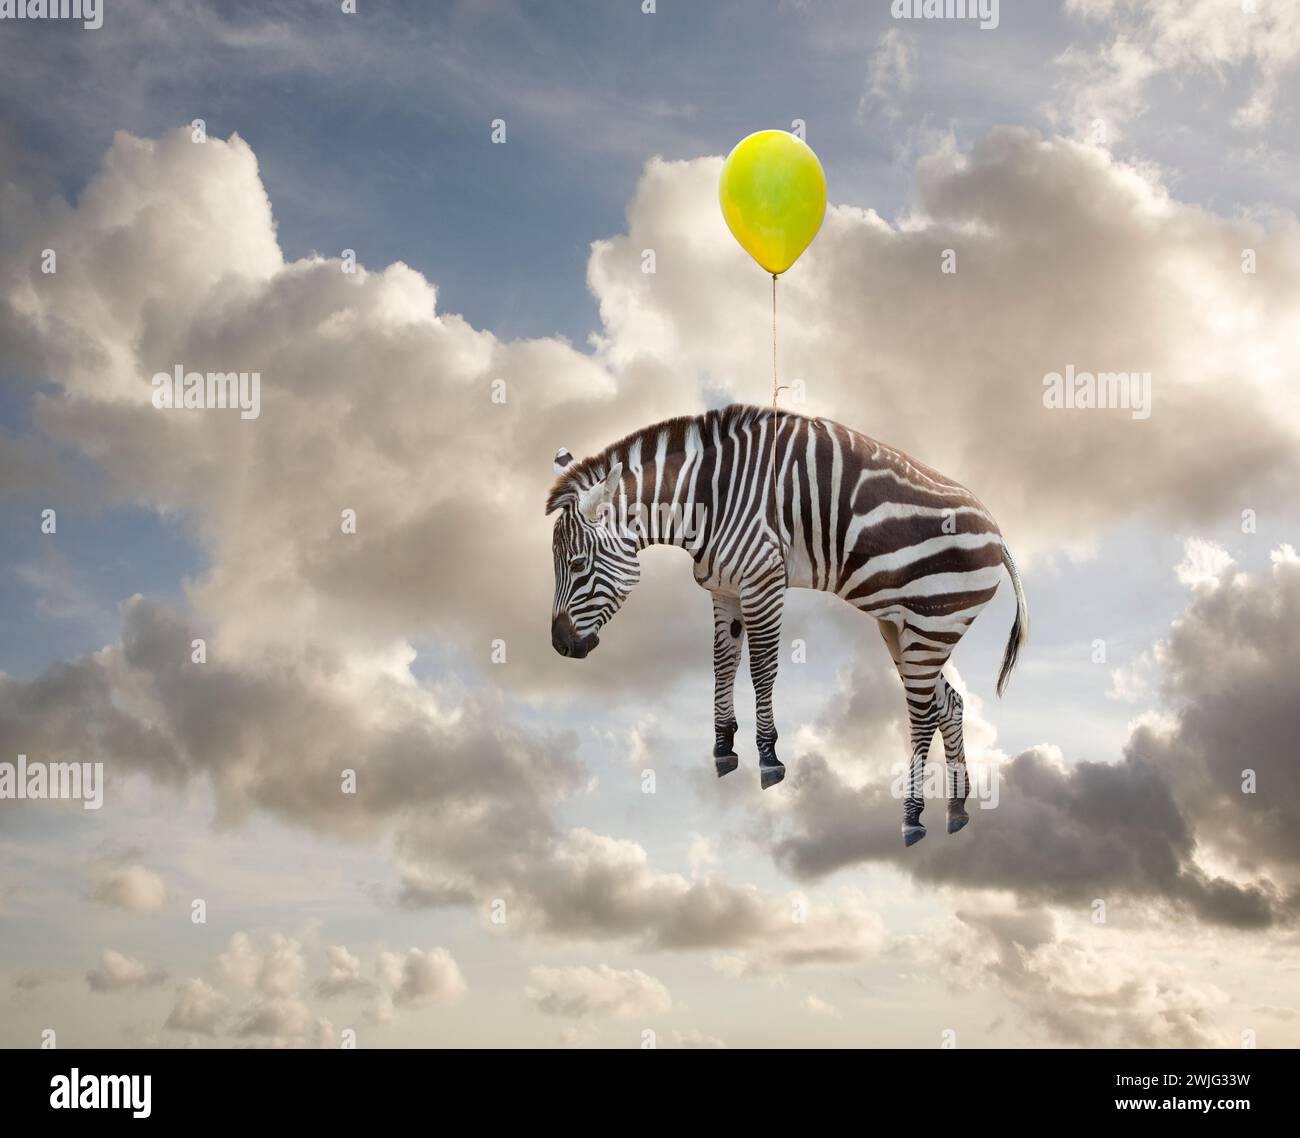 Un zèbre flotte à travers un ciel d'été suspendu à un ballon jaune dans une image sur l'inattendu, la fantaisie, l'imagination et le bizarre. Banque D'Images